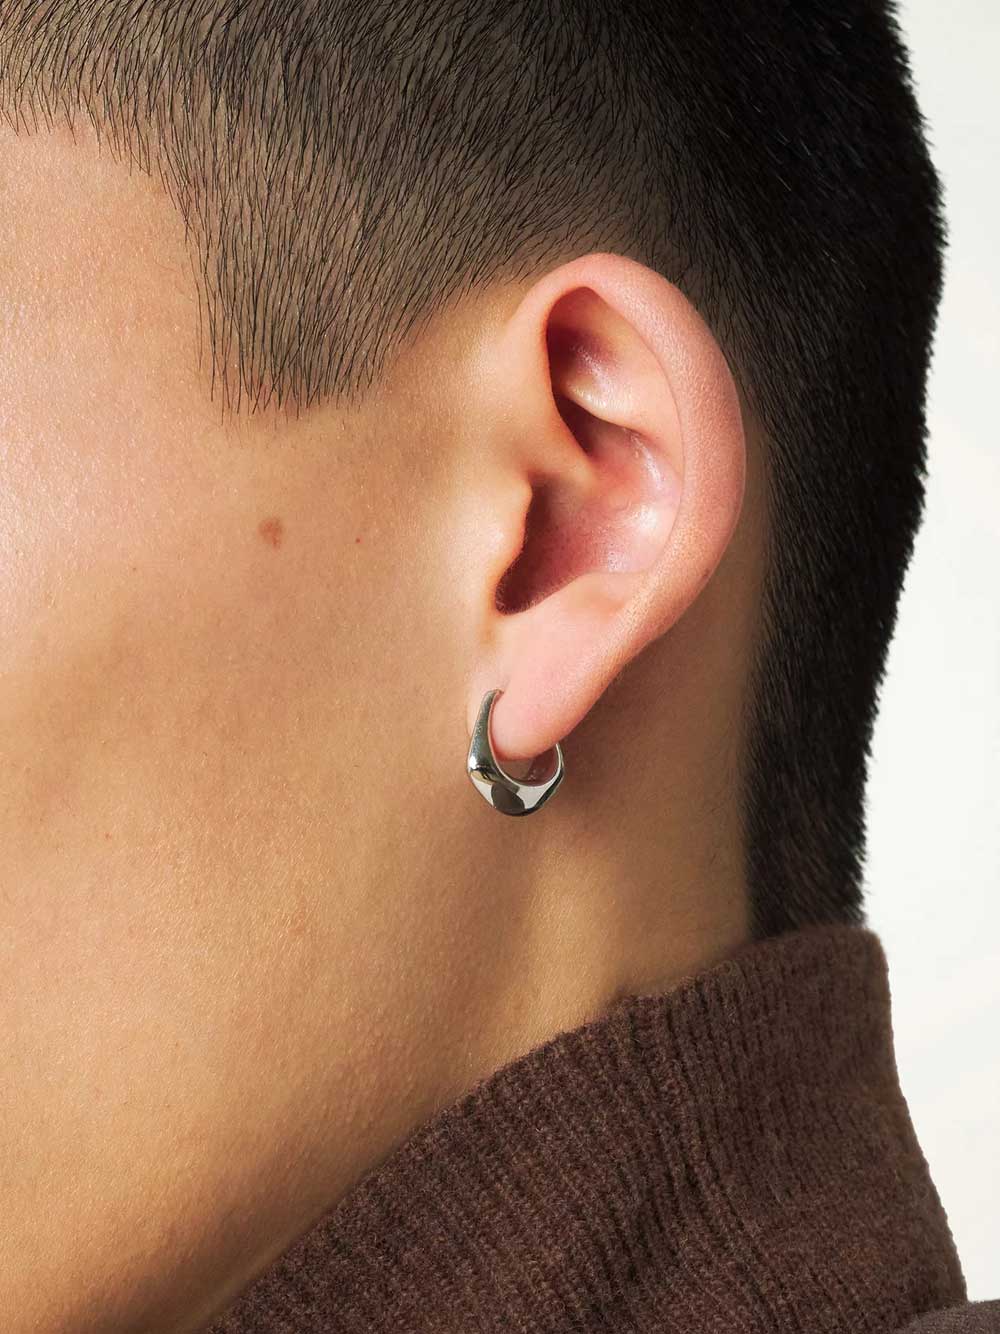 Silver Mini Drop Earrings